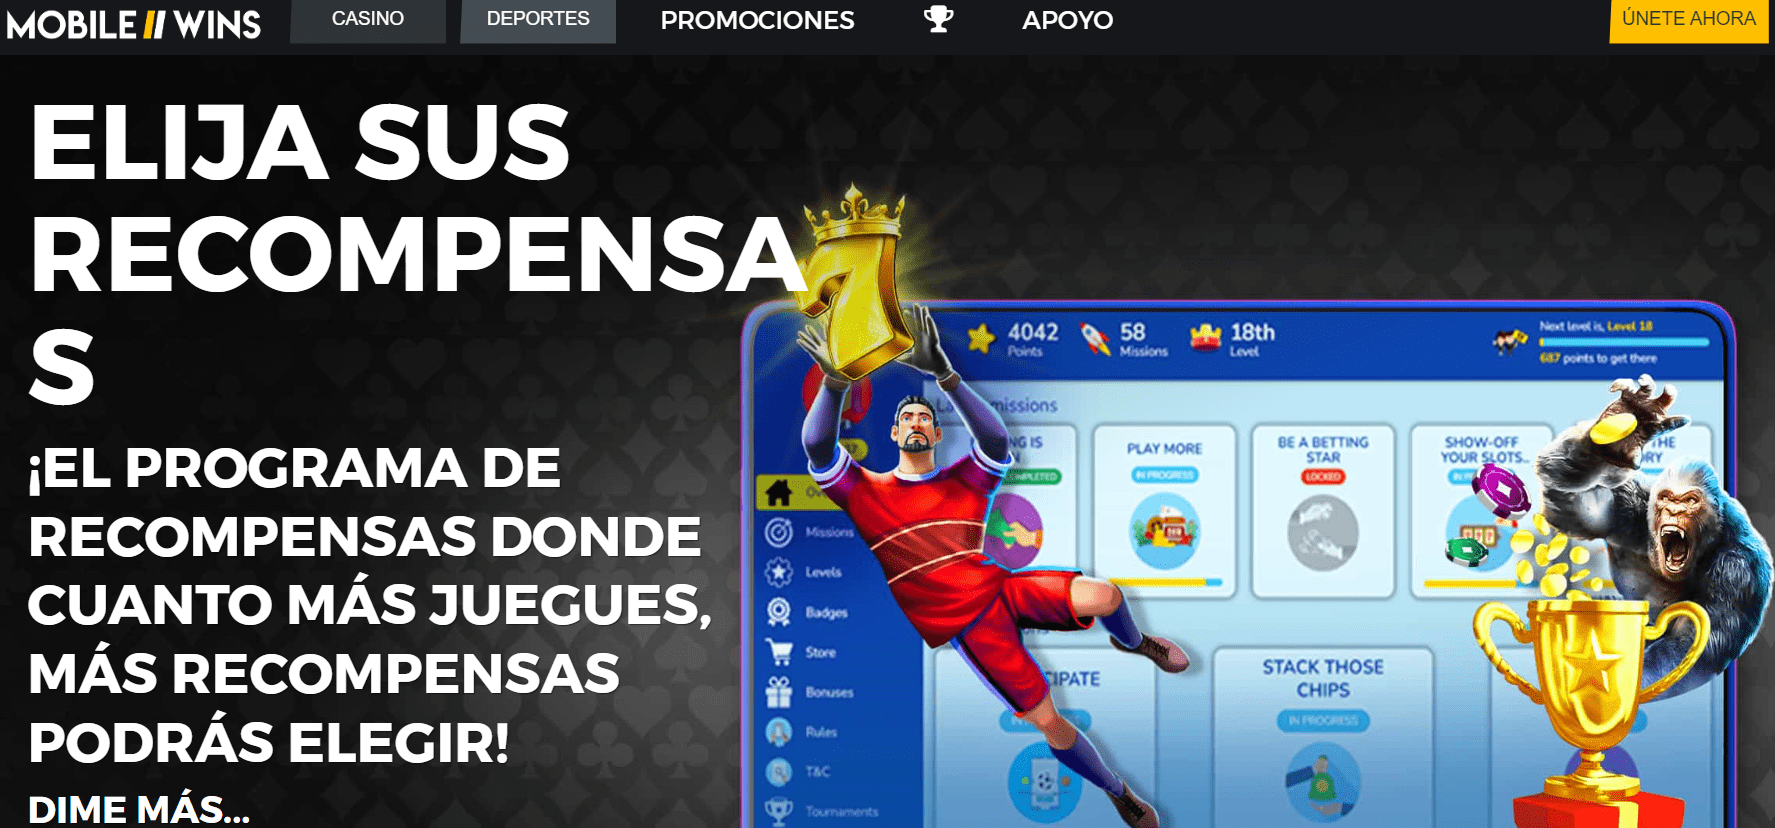 Imagen del sitio web Mobile Wins Perú con sus categorías de deportes, casino, promociones y apoyo o soporte